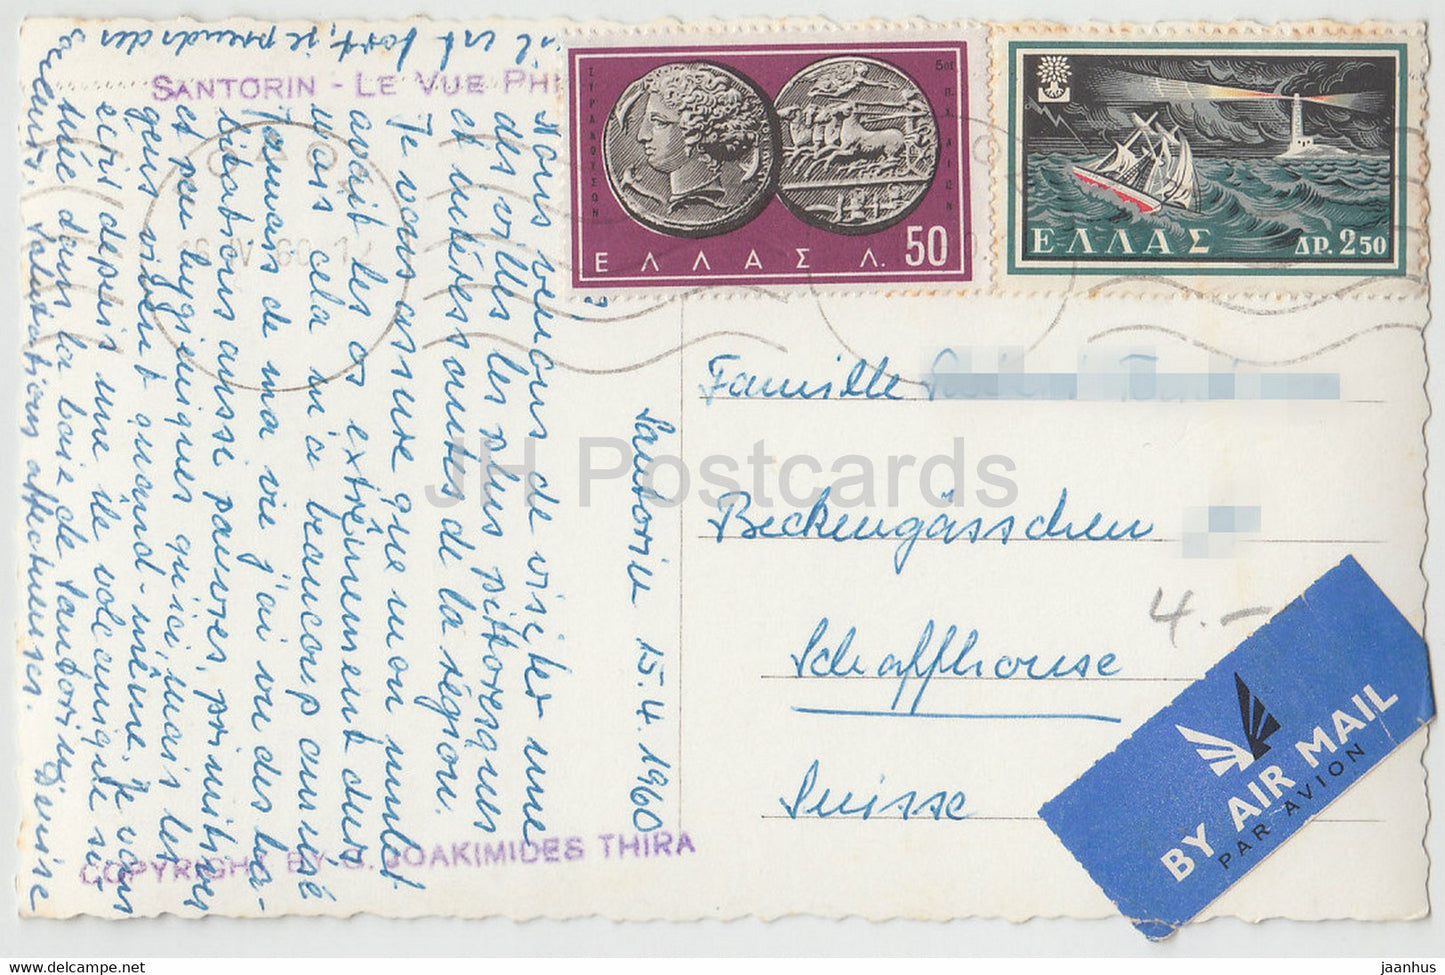 Santorin - Le Vue Phira - Santorin - carte postale ancienne - 1960 - Grèce - utilisé